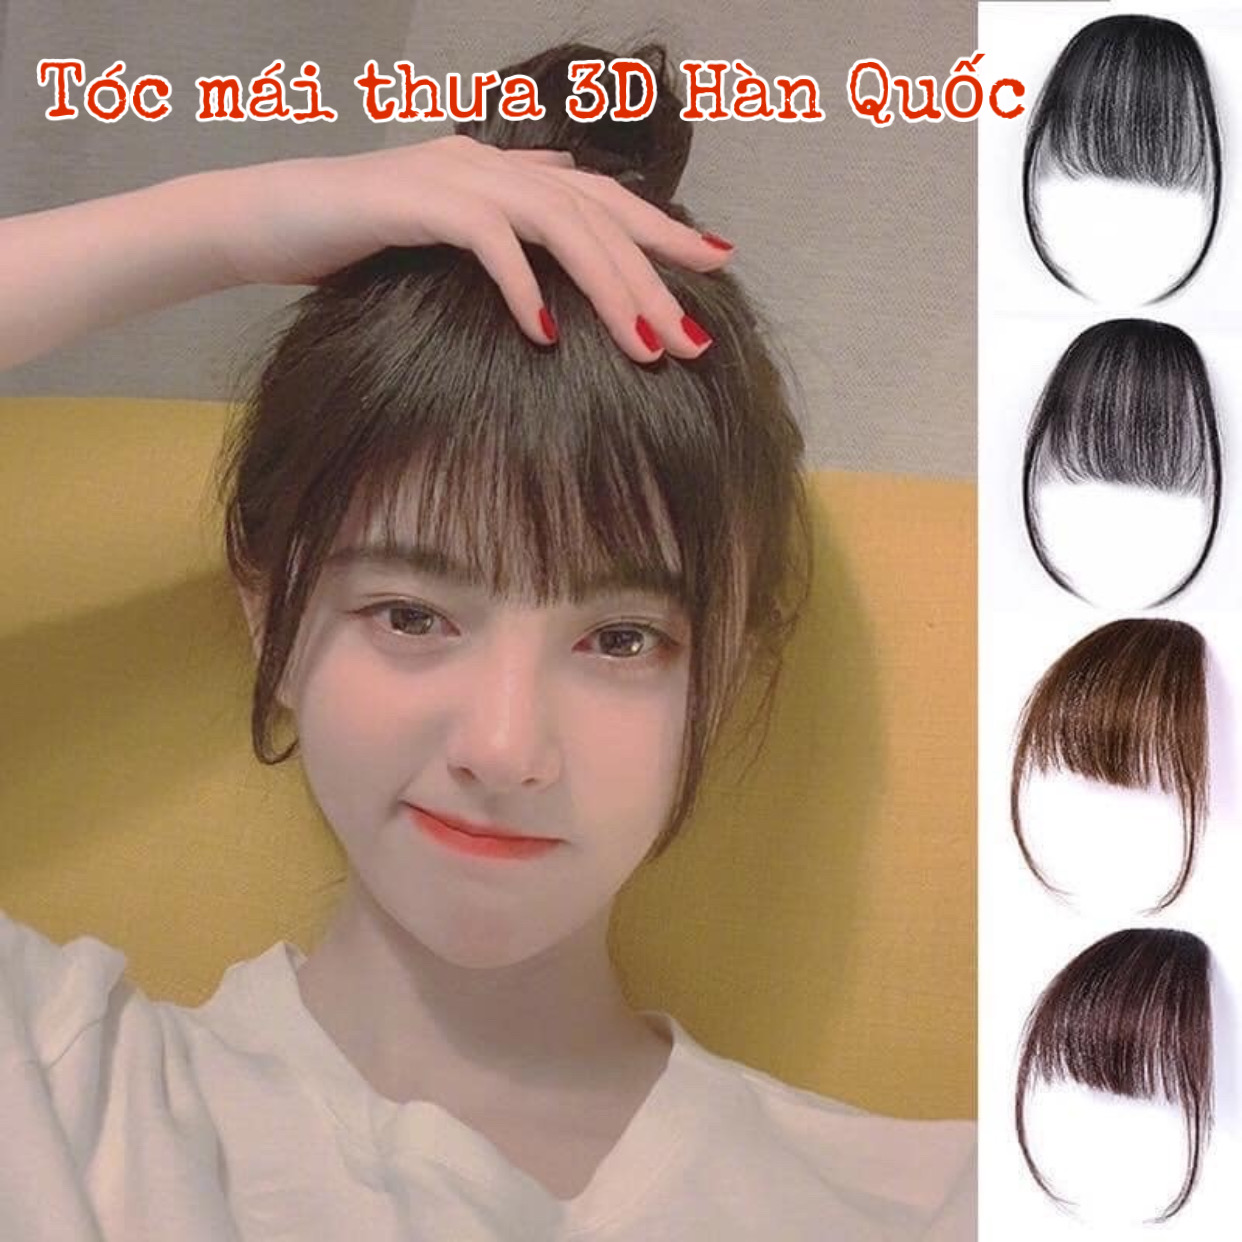 Bạn muốn có mái tóc mái giả Hàn Quốc thật đẹp và lạ mắt? Đừng bỏ lỡ hình ảnh này! Chỉ cần một bộ tóc mái giả Hàn Quốc, bạn sẽ có khả năng thay đổi phong cách theo cách riêng của bạn mà không phải tốn quá nhiều thời gian và tiền bạc.